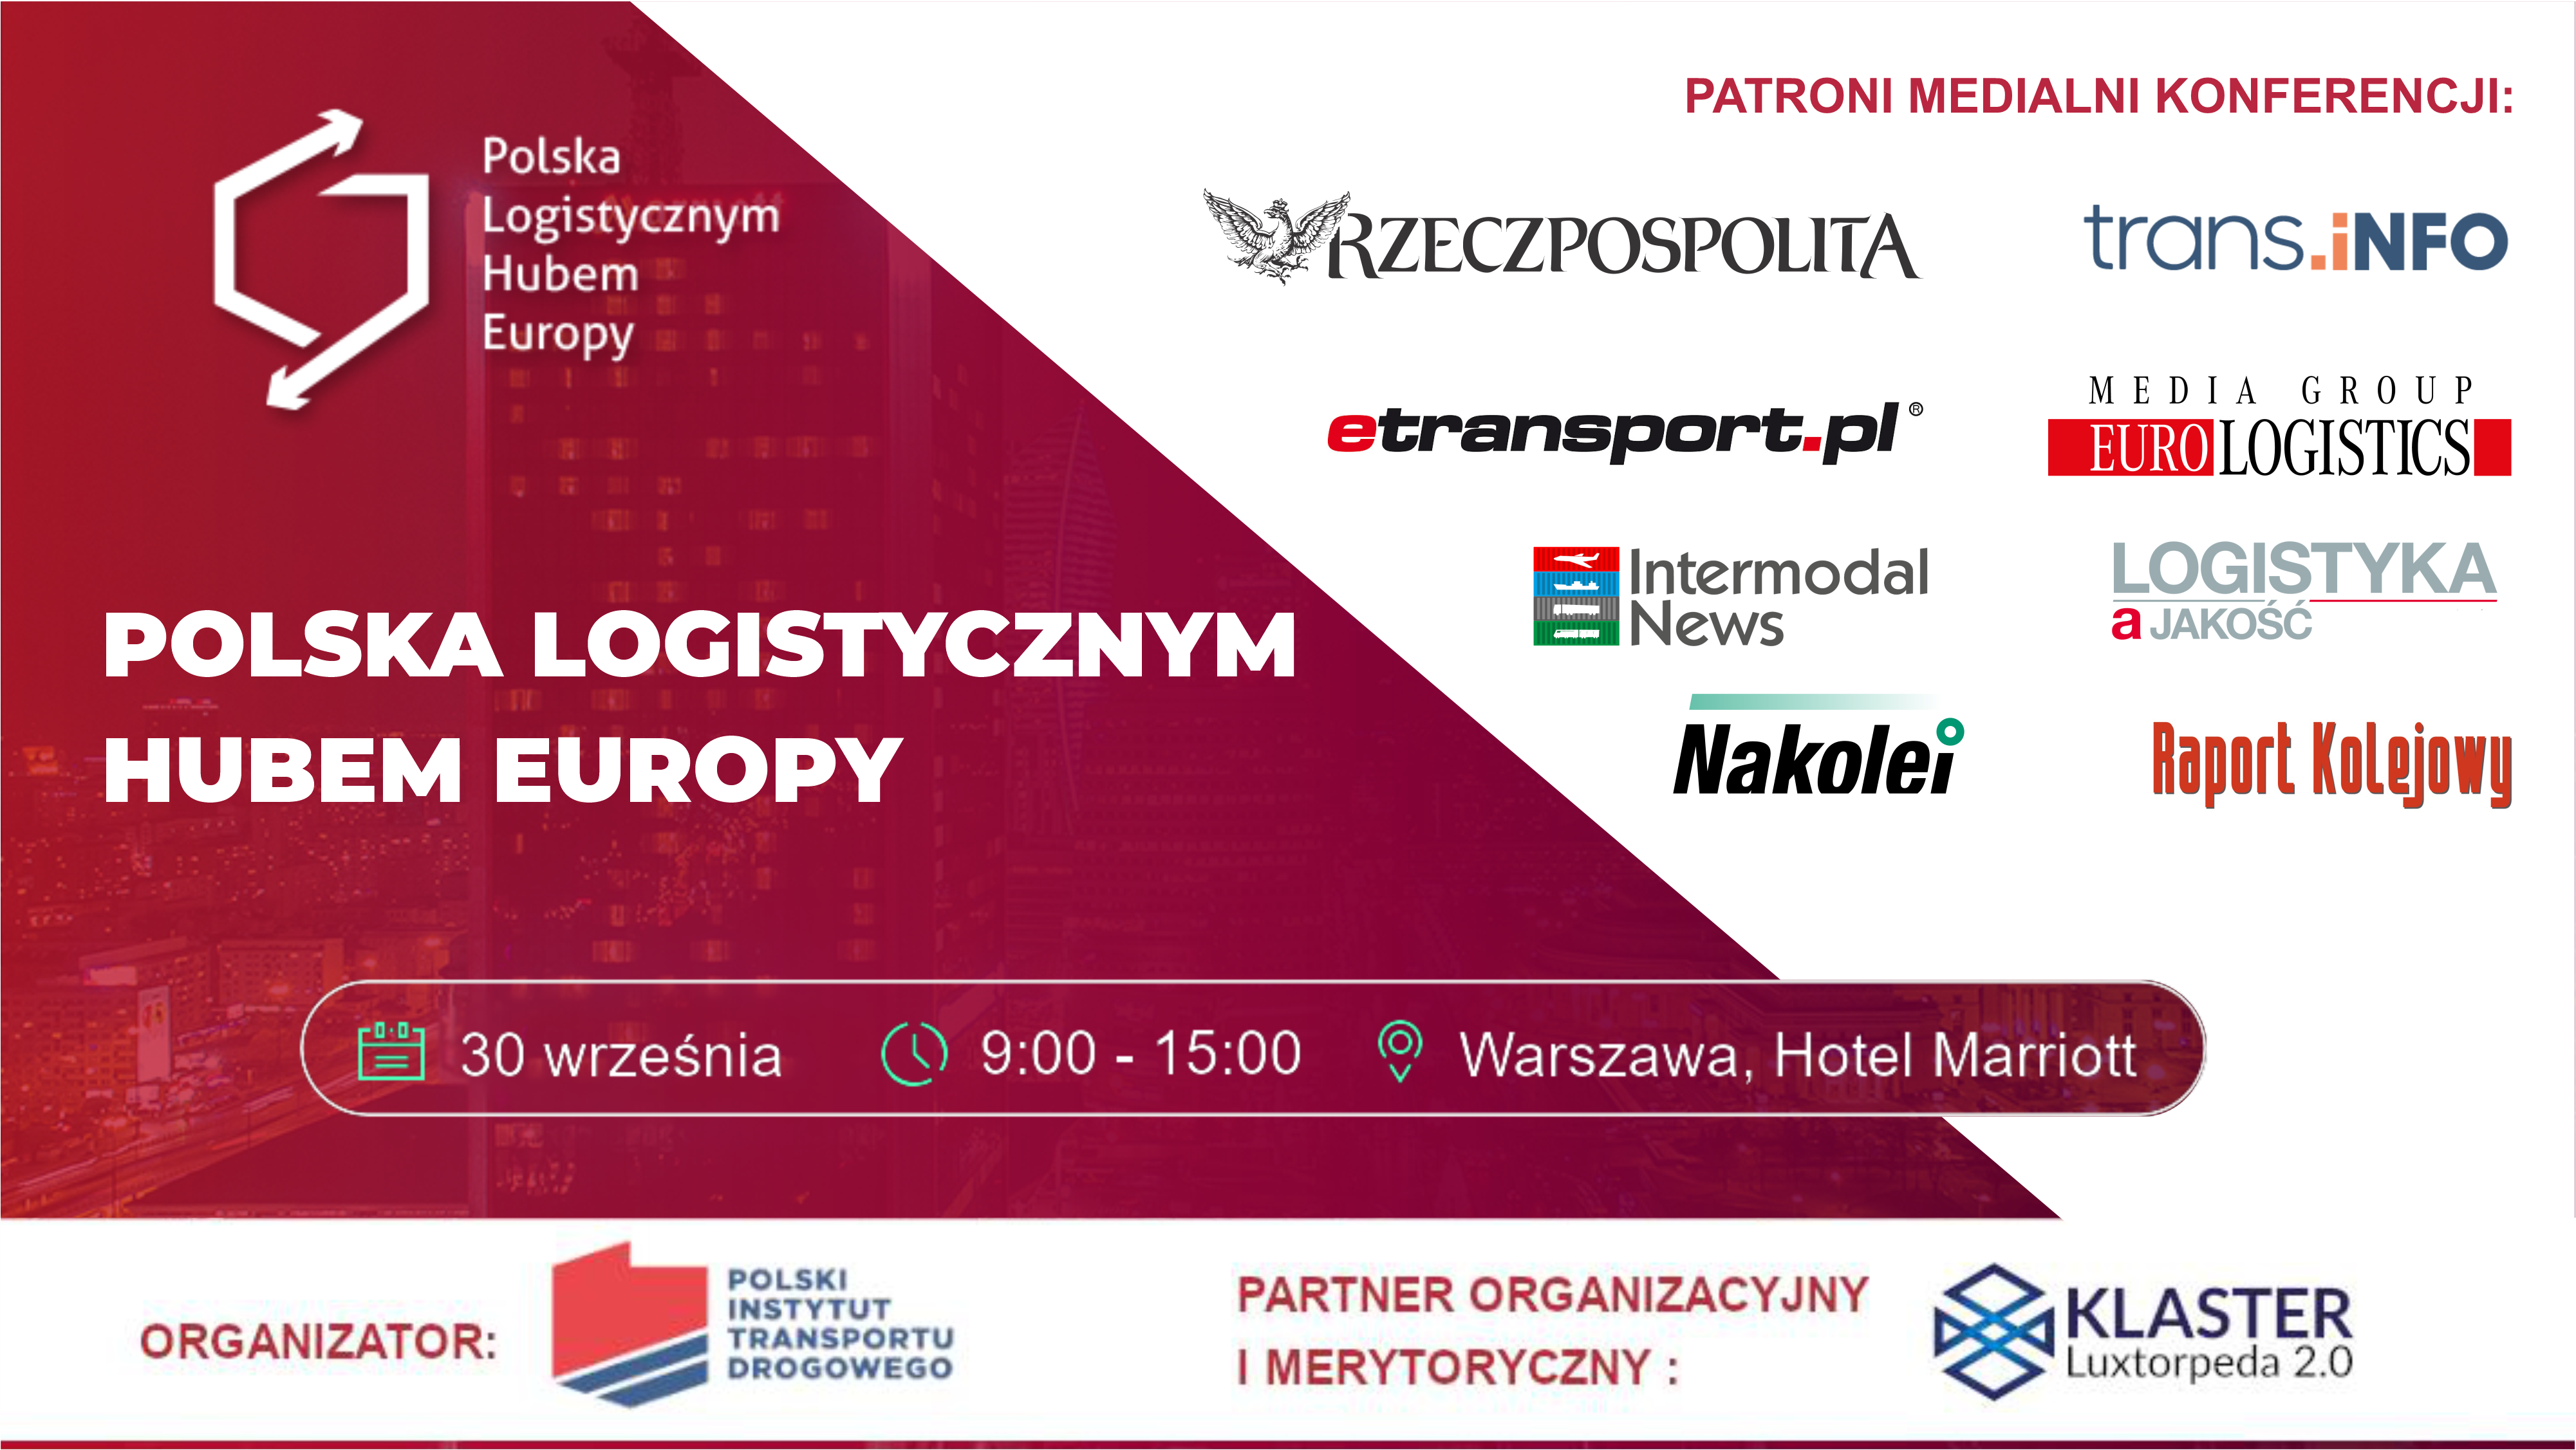 Patronaty medialne konferencji Polska Logistycznym Hubem Europy